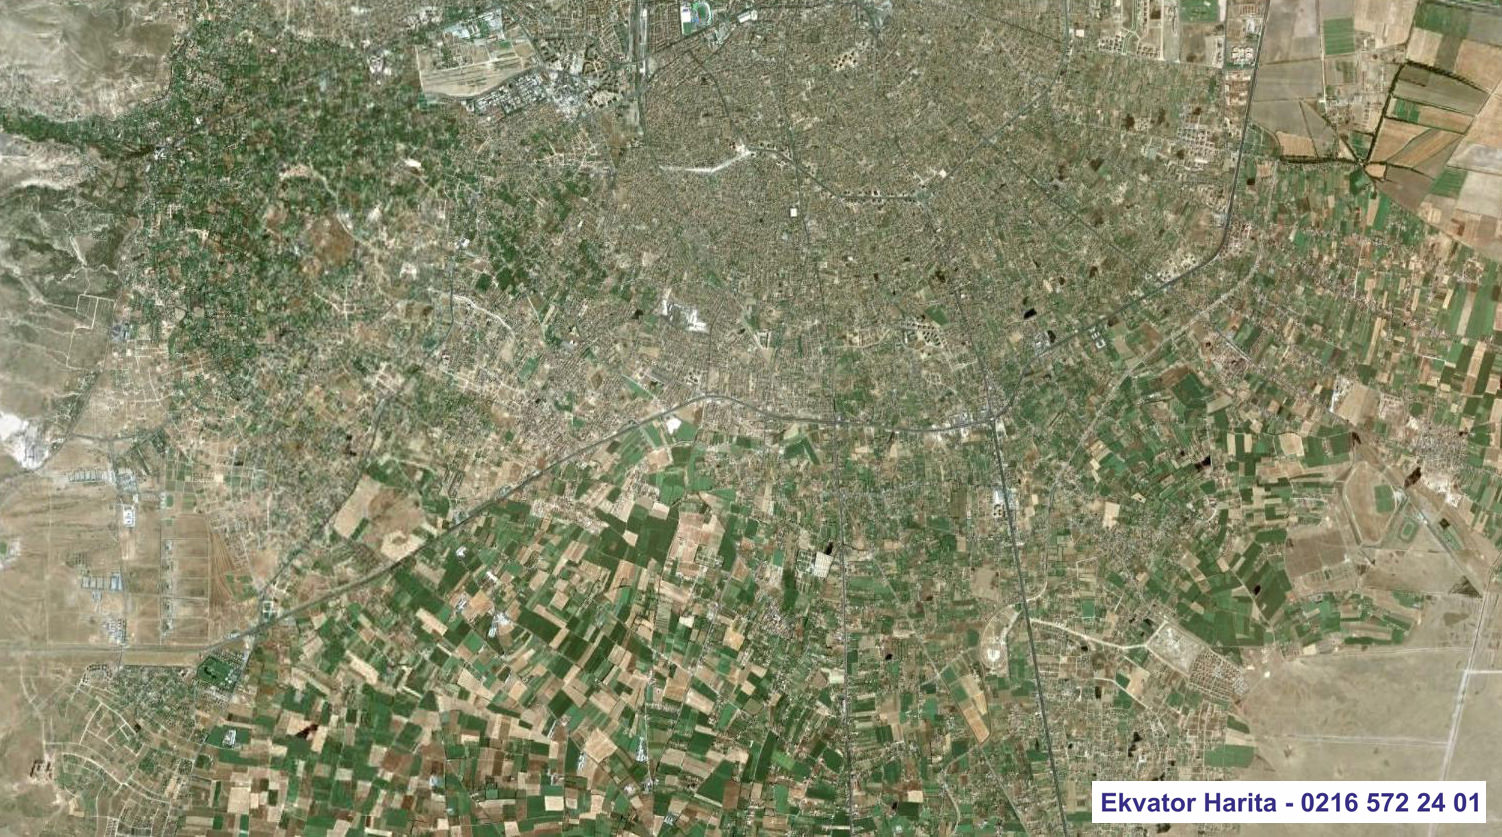 Konya Uydu Haritası Örnek Fotoğrafı